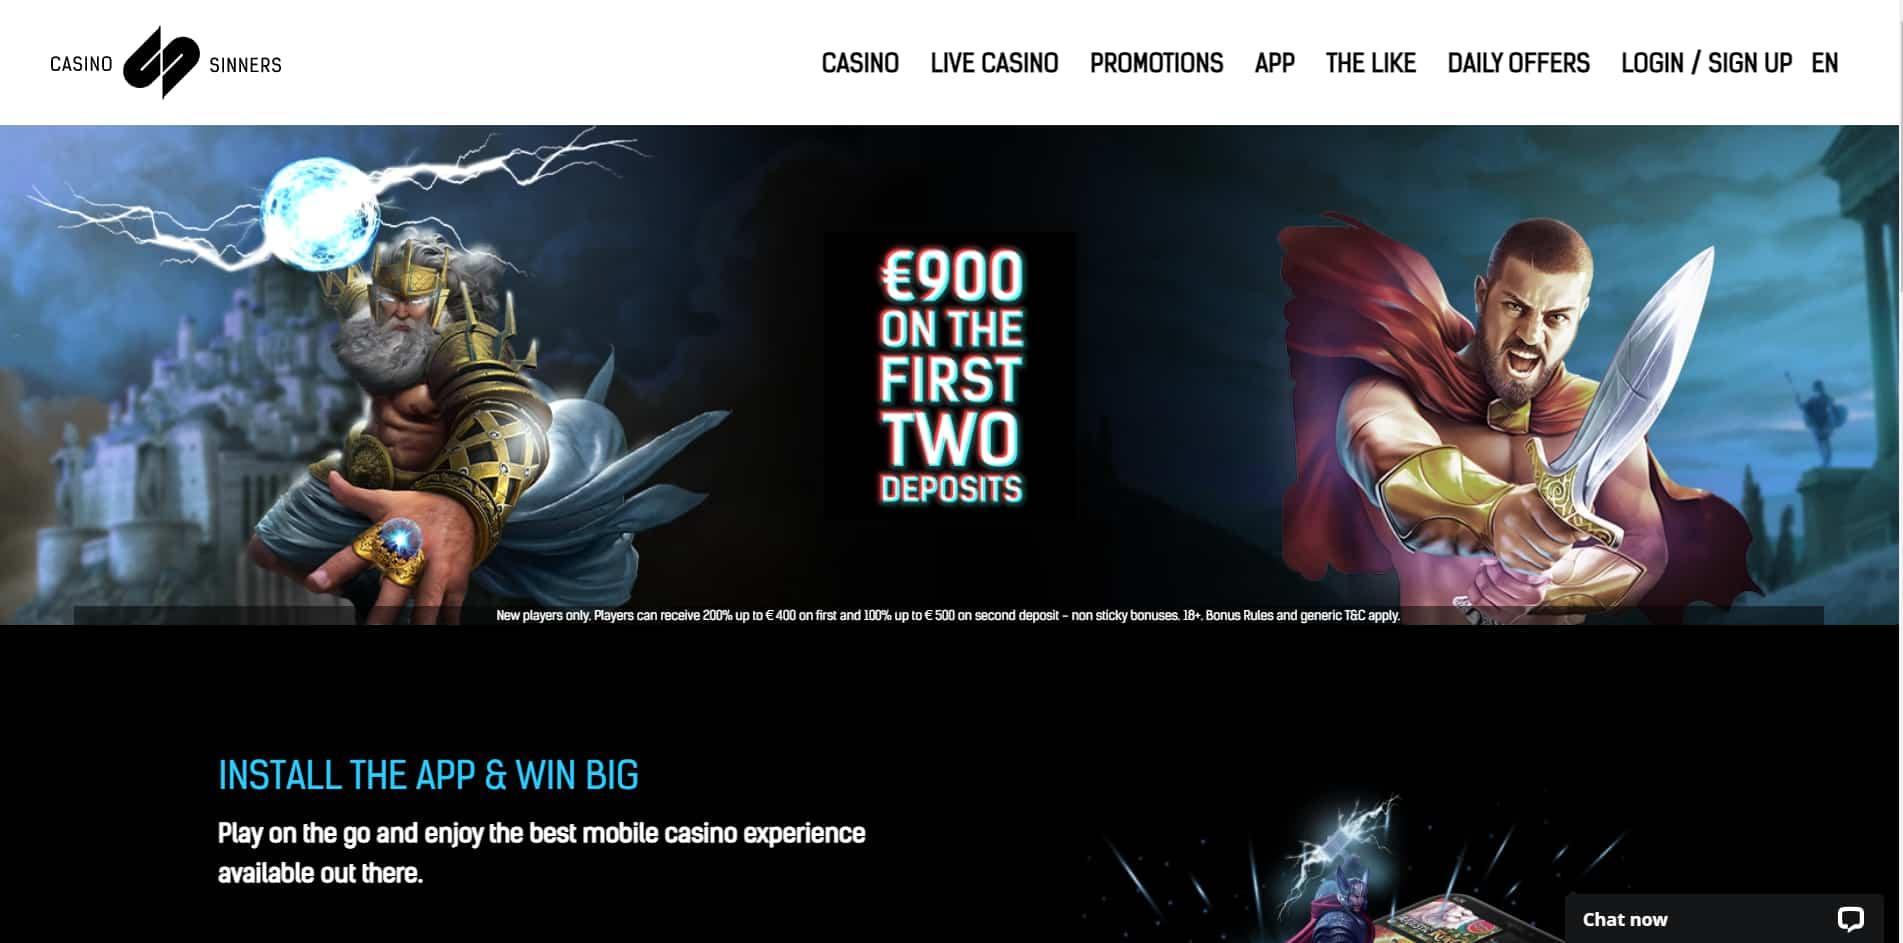 Casino Sinners casino homepage